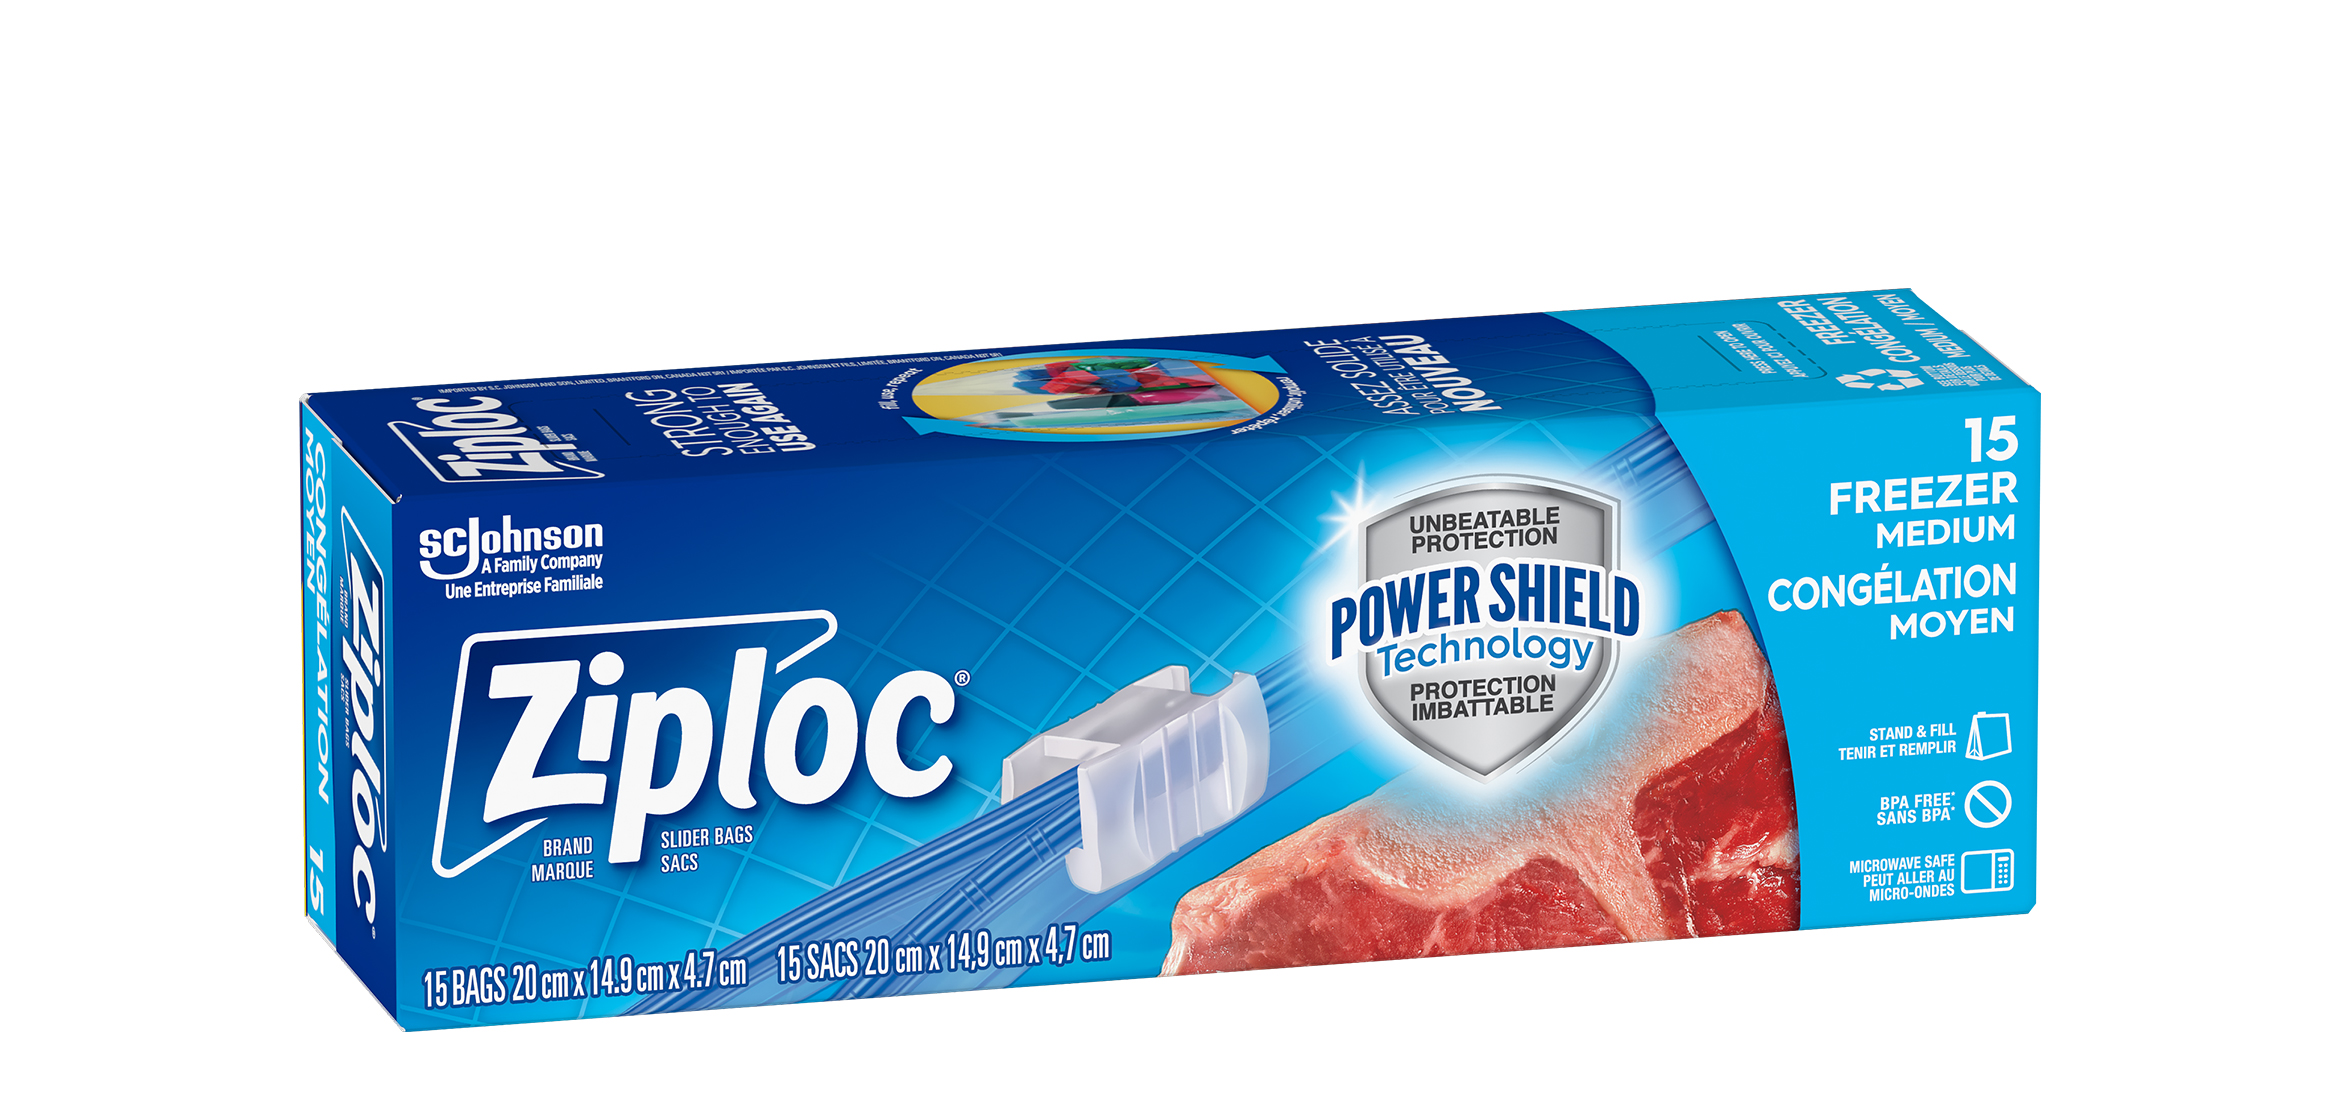 Ziploc®, Slider Freezer Bags Medium, Ziploc® brand